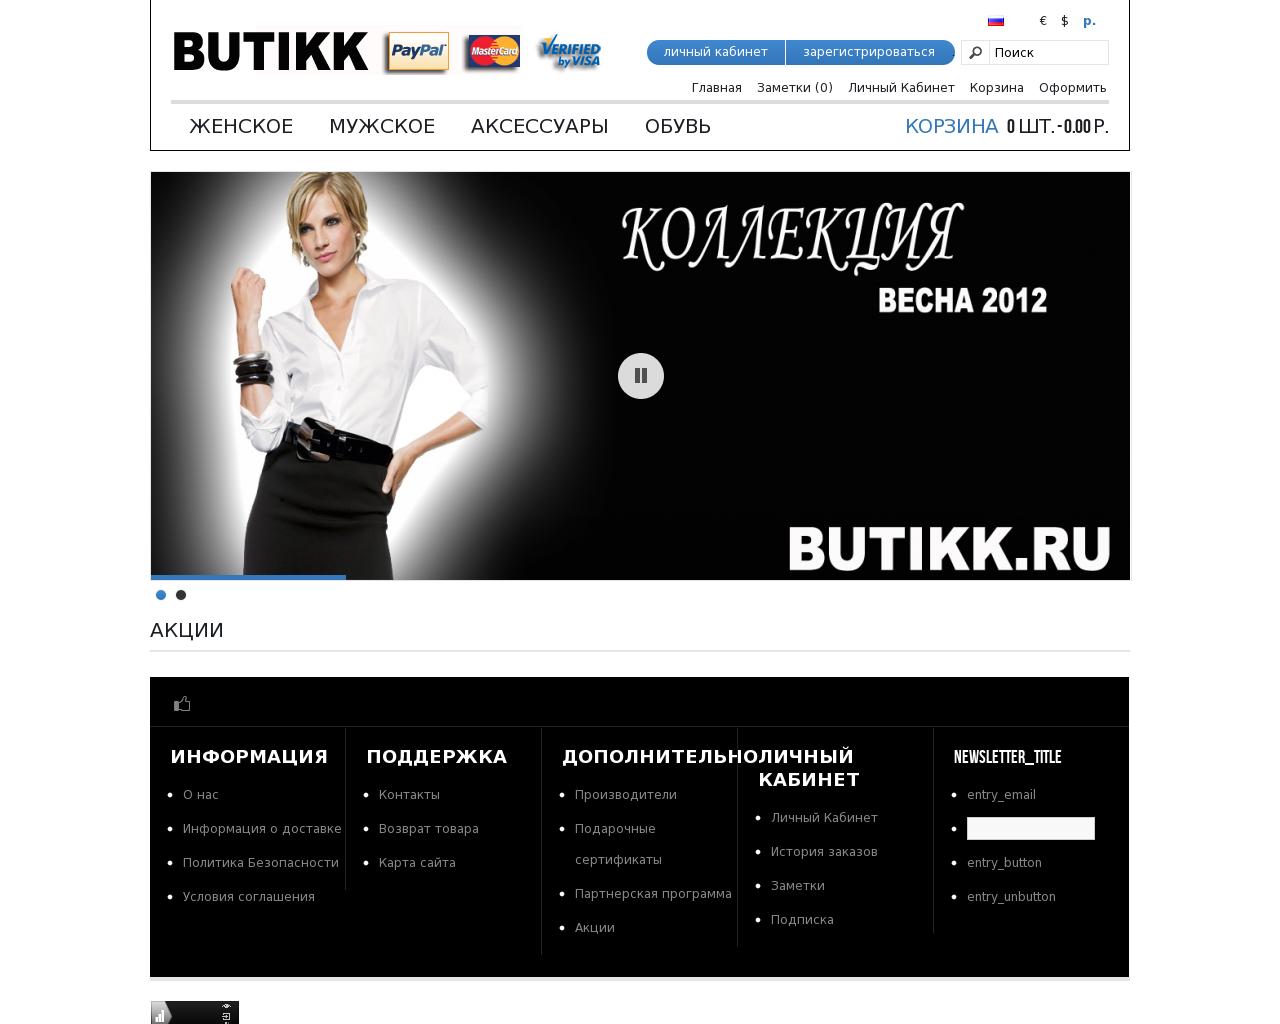 Изображение сайта butikk.ru в разрешении 1280x1024